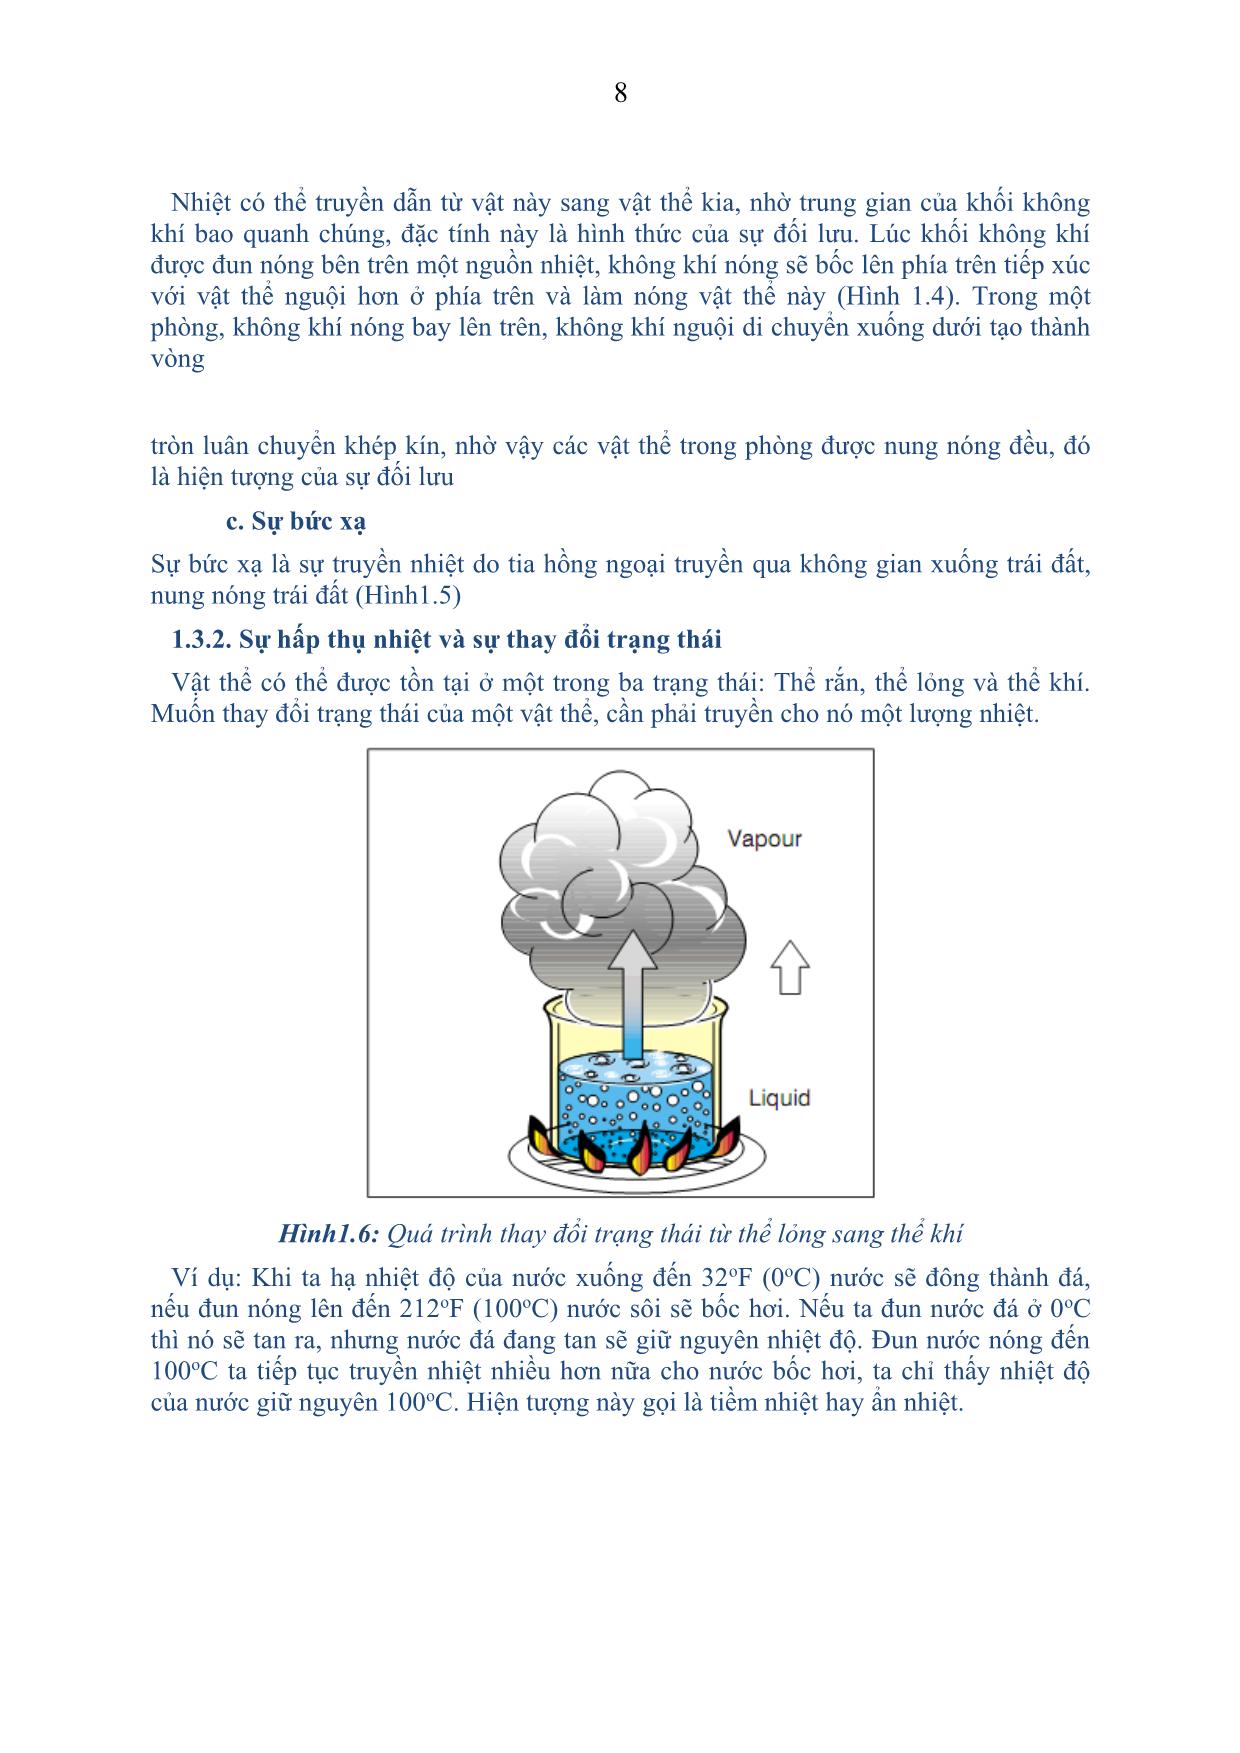 Giáo trình Bảo dưỡng & Sửa chữa hệ thống điều hòa không khí trên ô tô trang 8